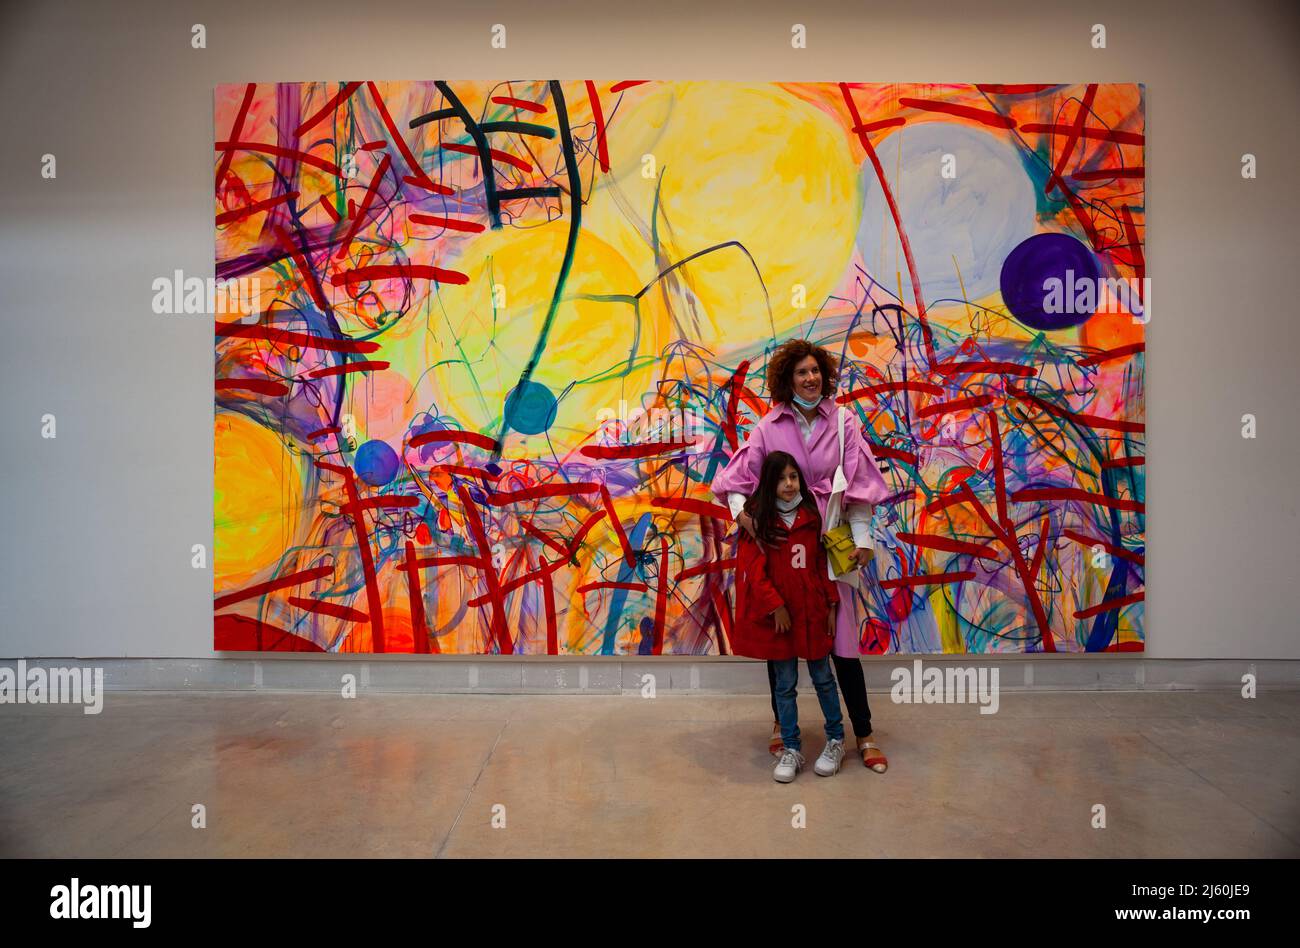 VENISE, ITALIE - avril 20: Maman et fille à côté de la peinture de Jadé Fadojutimi à l'exposition internationale d'art de Venise biennale 59th sur Apri Banque D'Images